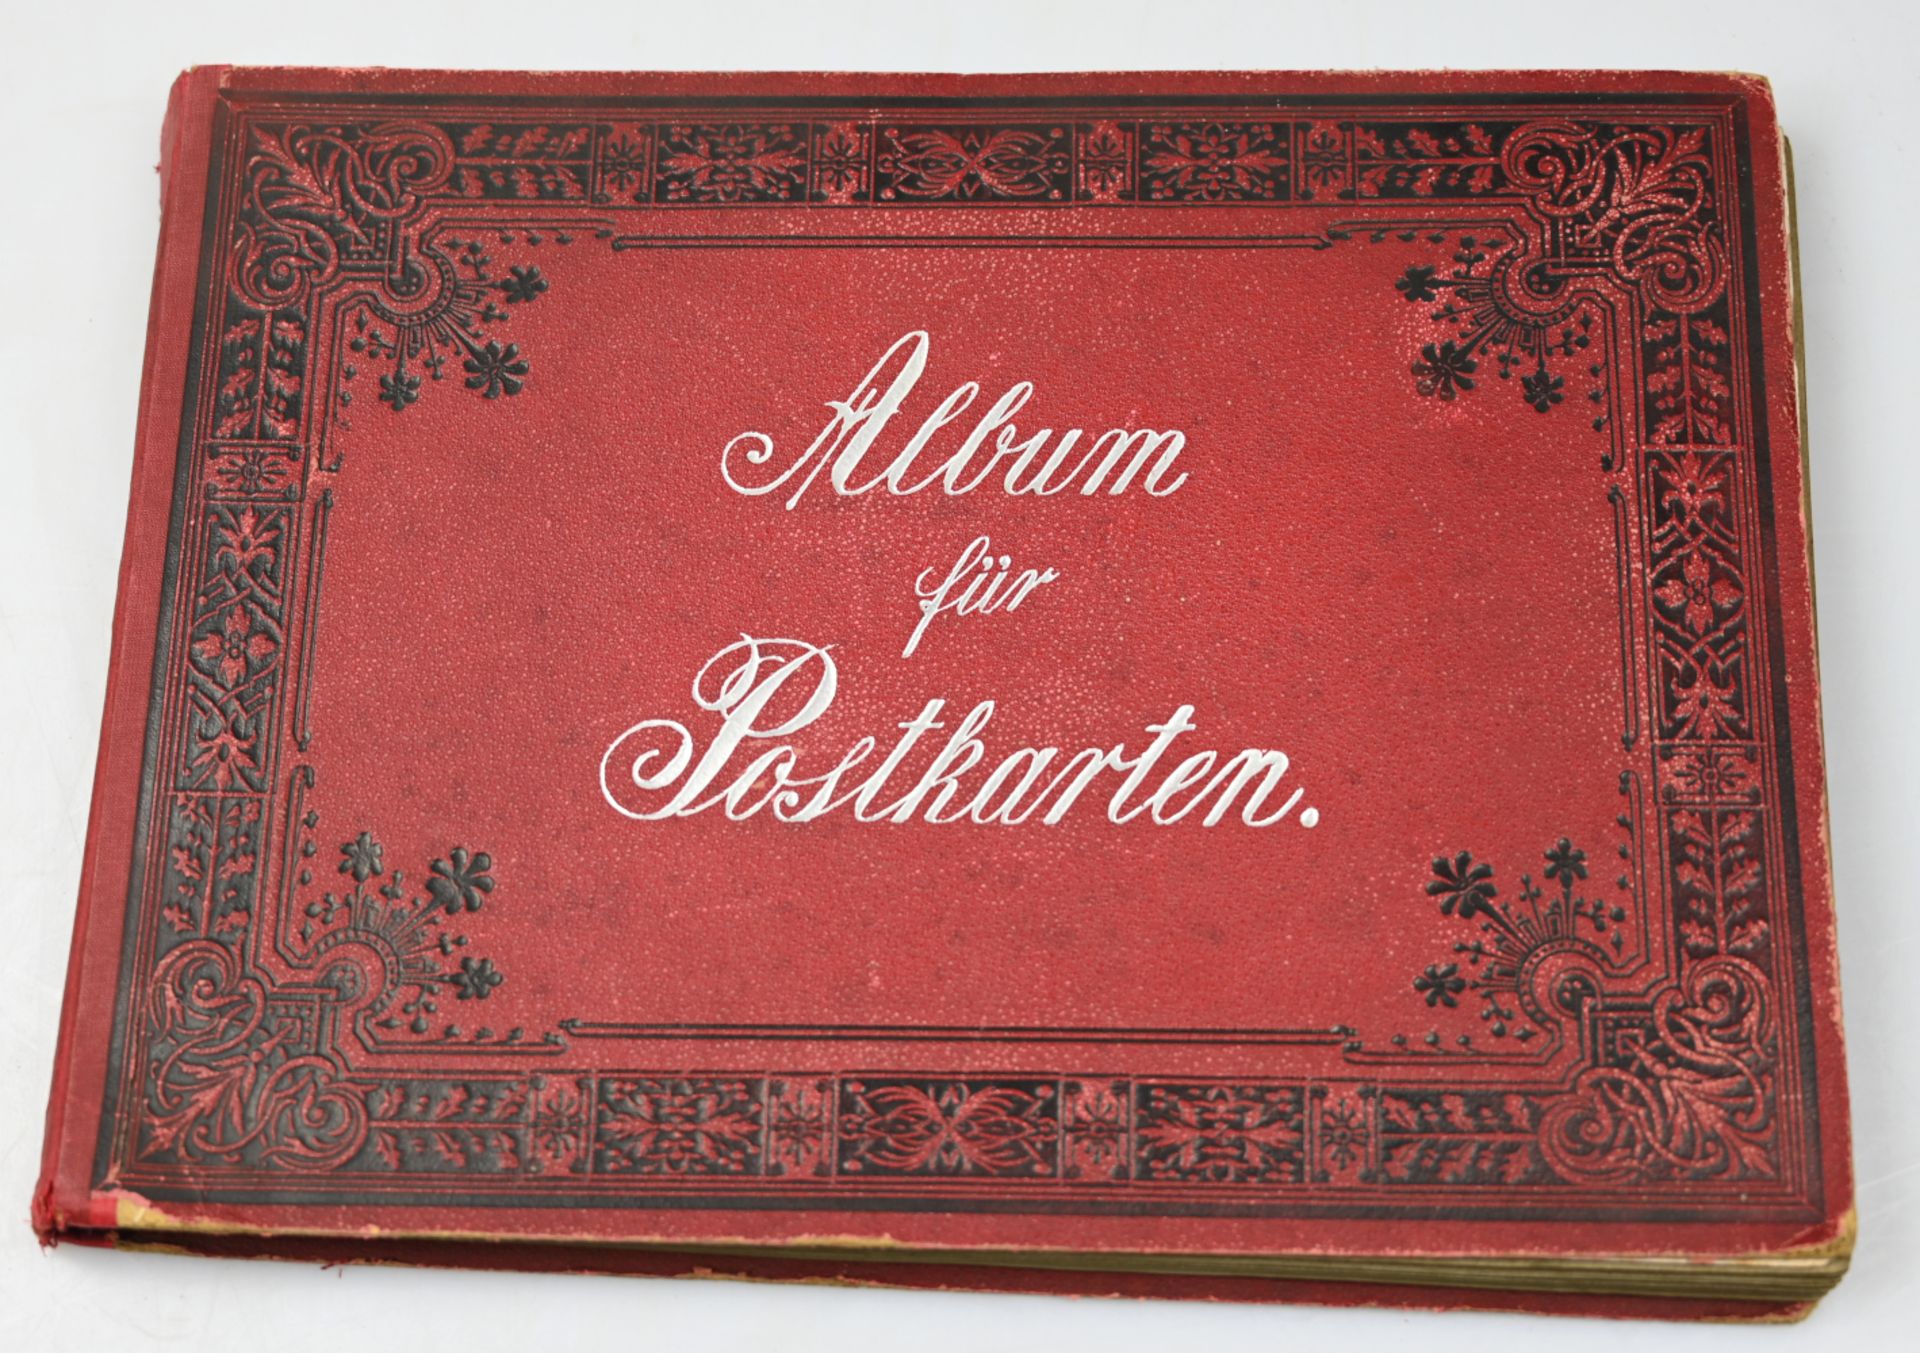 1 Postkartenalbum um 1900/1920 mit ca. 116 Gruß- und Ansichtskarten u.a.: militärische-/ Flottenmoti - Image 5 of 5